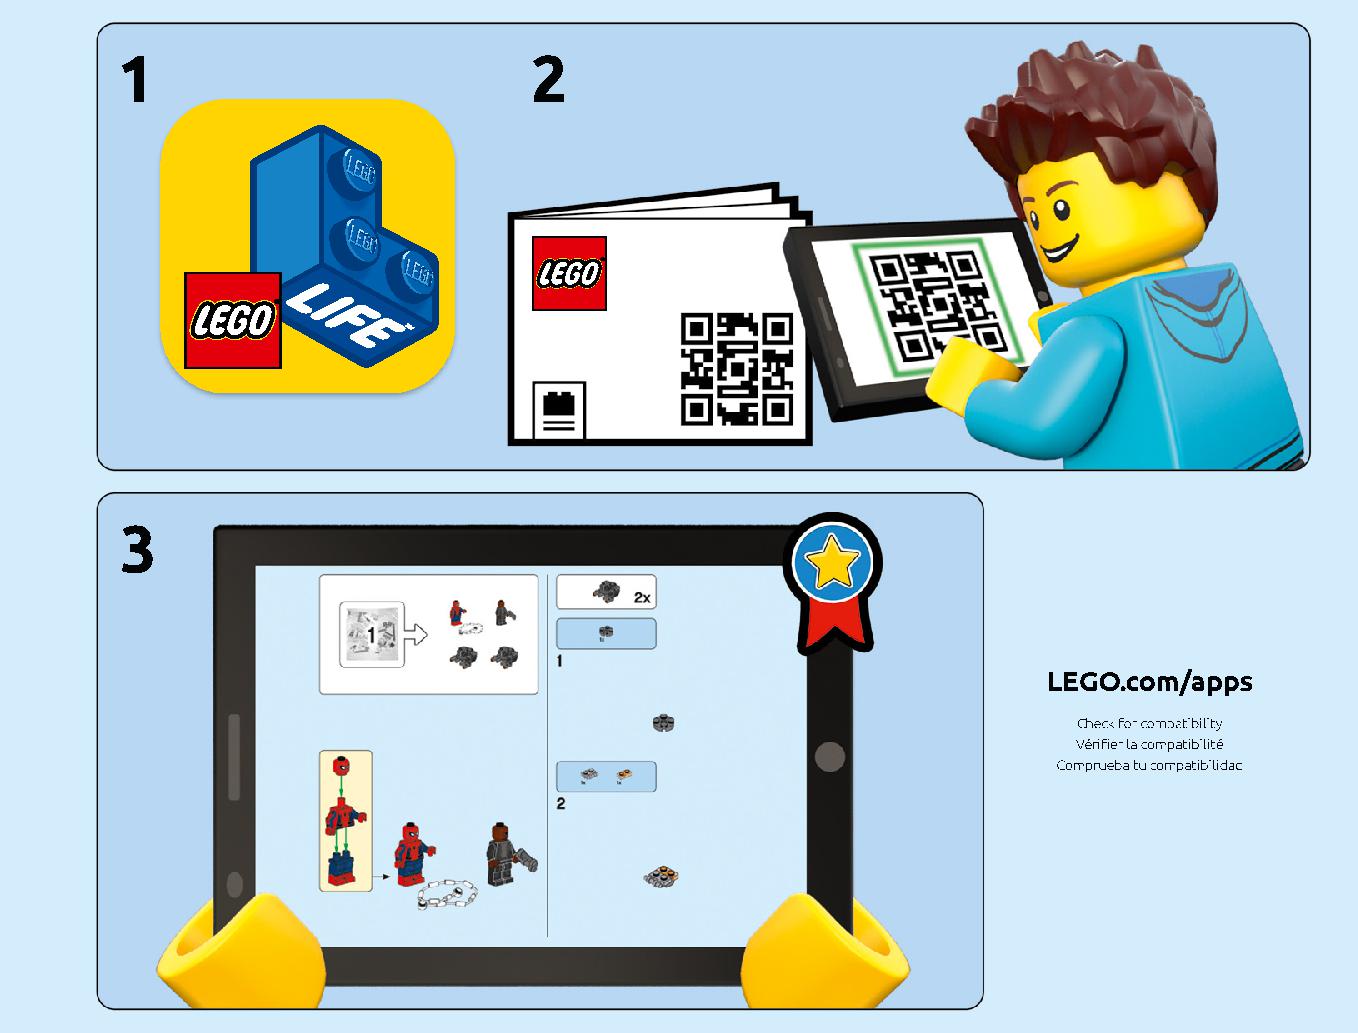 スタークジェットとドローン攻撃 76130 レゴの商品情報 レゴの説明書・組立方法 3 page